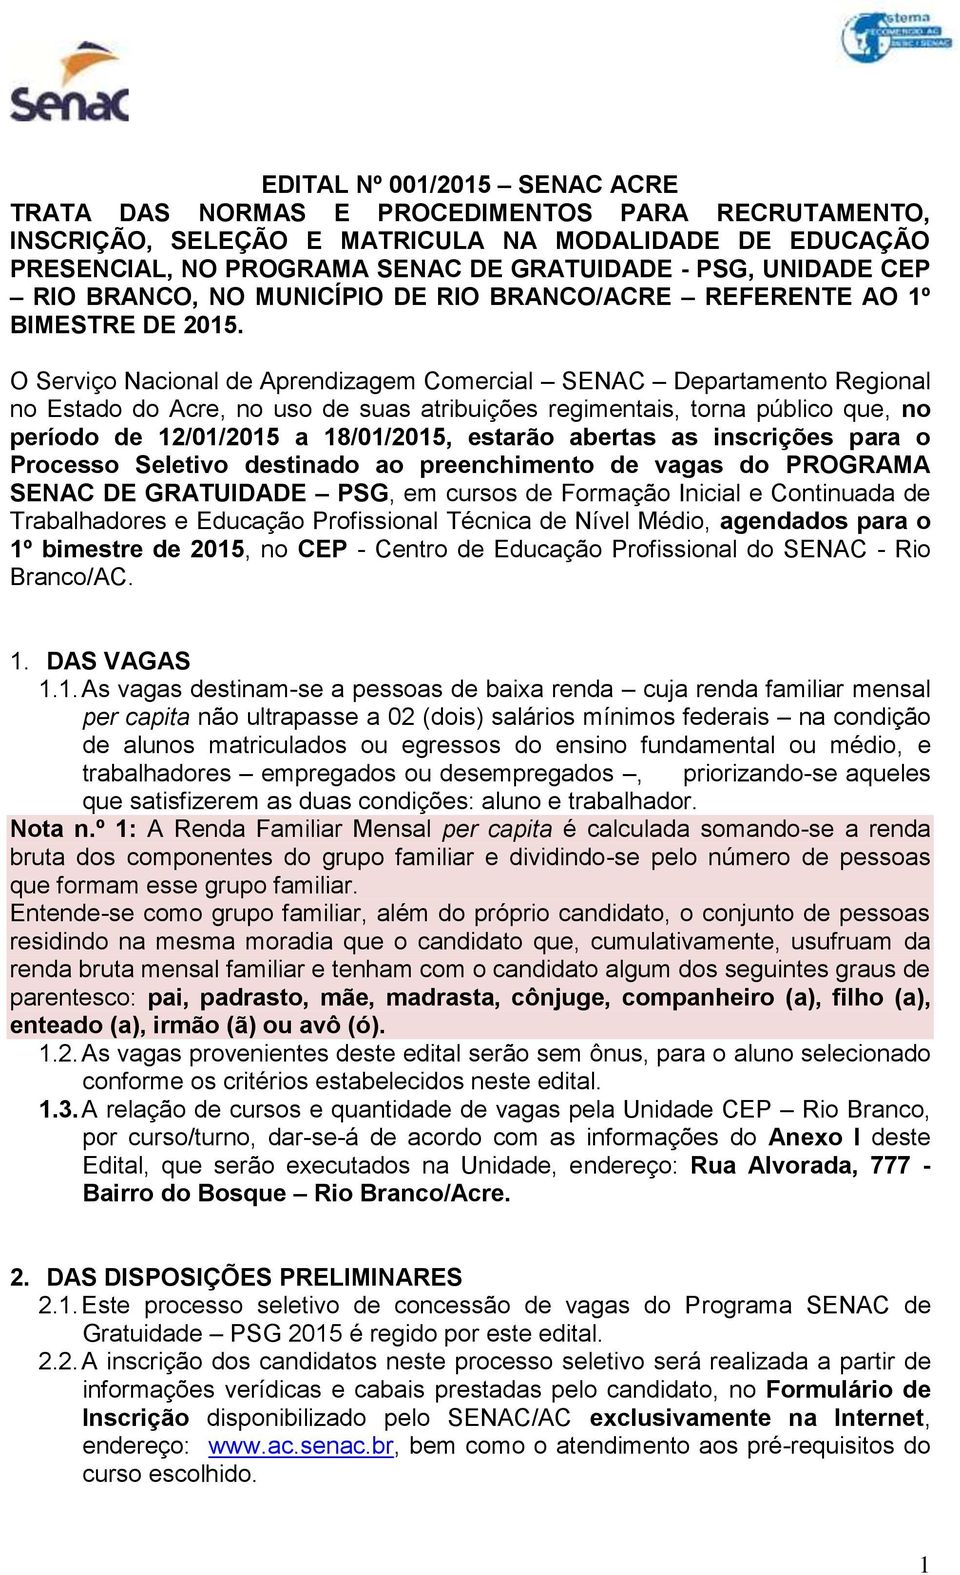 O Serviço Nacional de Aprendizagem Comercial SENAC Departamento Regional no Estado do Acre, no uso de suas atribuições regimentais, torna público que, no período de 12/01/2015 a 18/01/2015, estarão